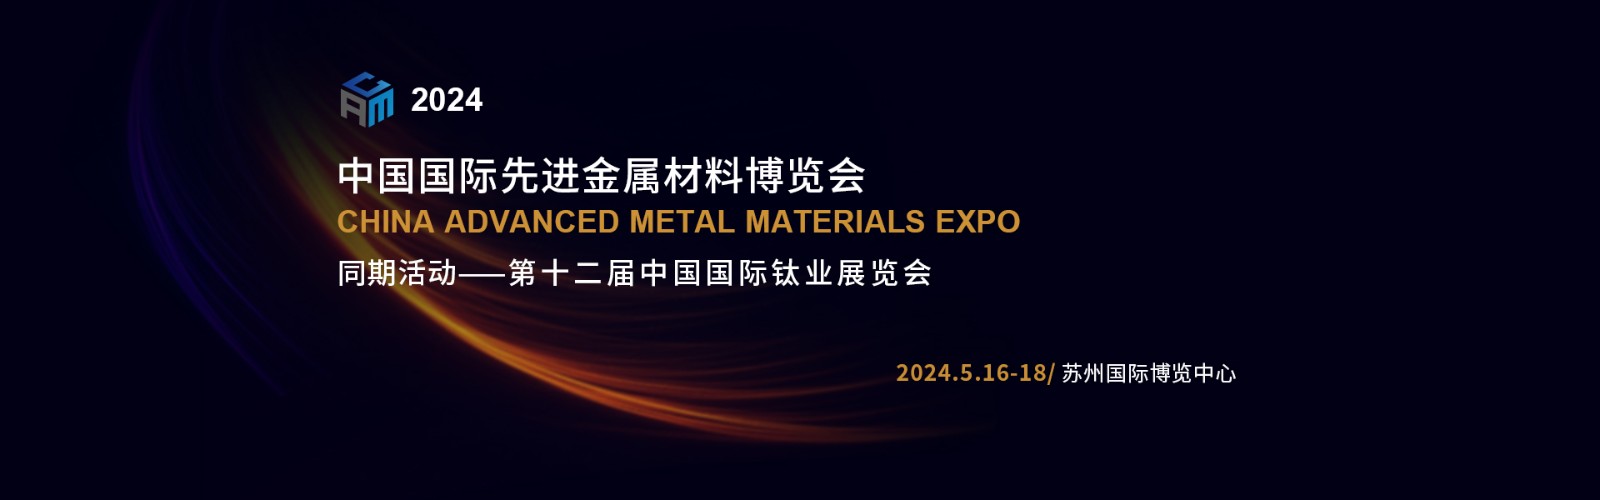 先进金属材料博览会